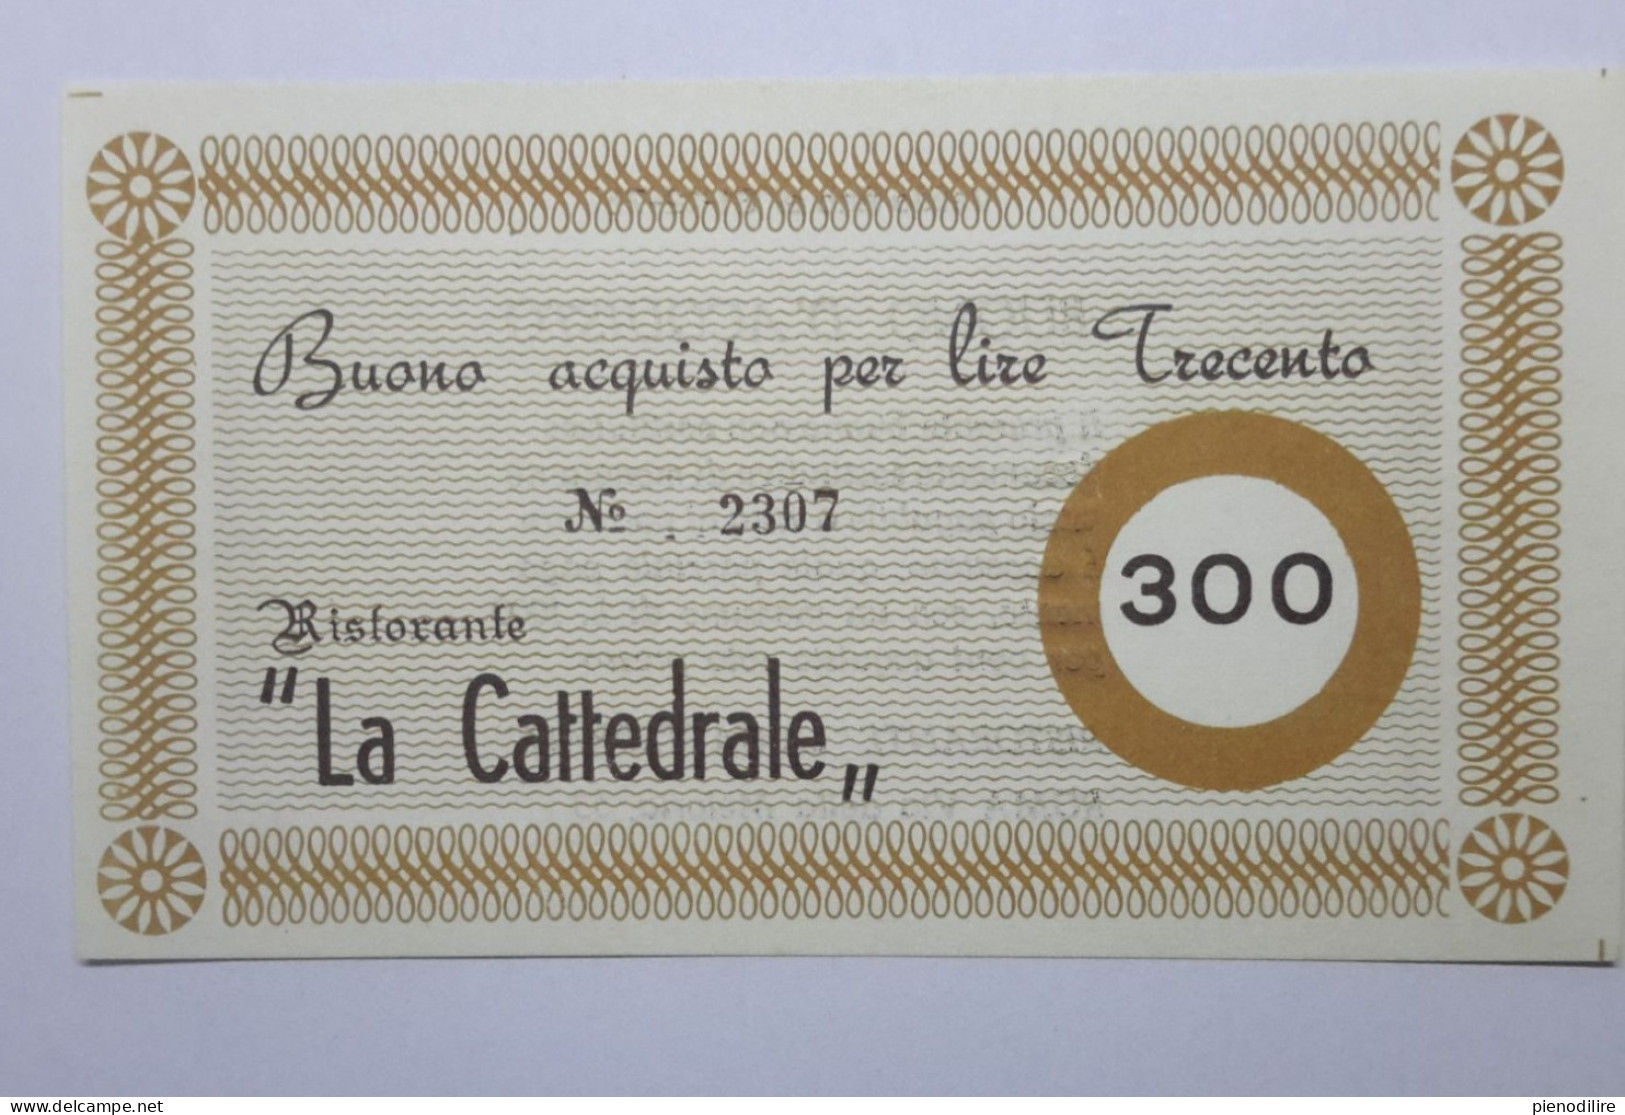 LOTTO 4Pz. 100 200 300 400 LIRE BUONI ACQUISTO RISTORANTE LA CATTEDRALE ROMA VALIDO FINO AL 31.12.1976 (A.4) - [10] Cheques En Mini-cheques